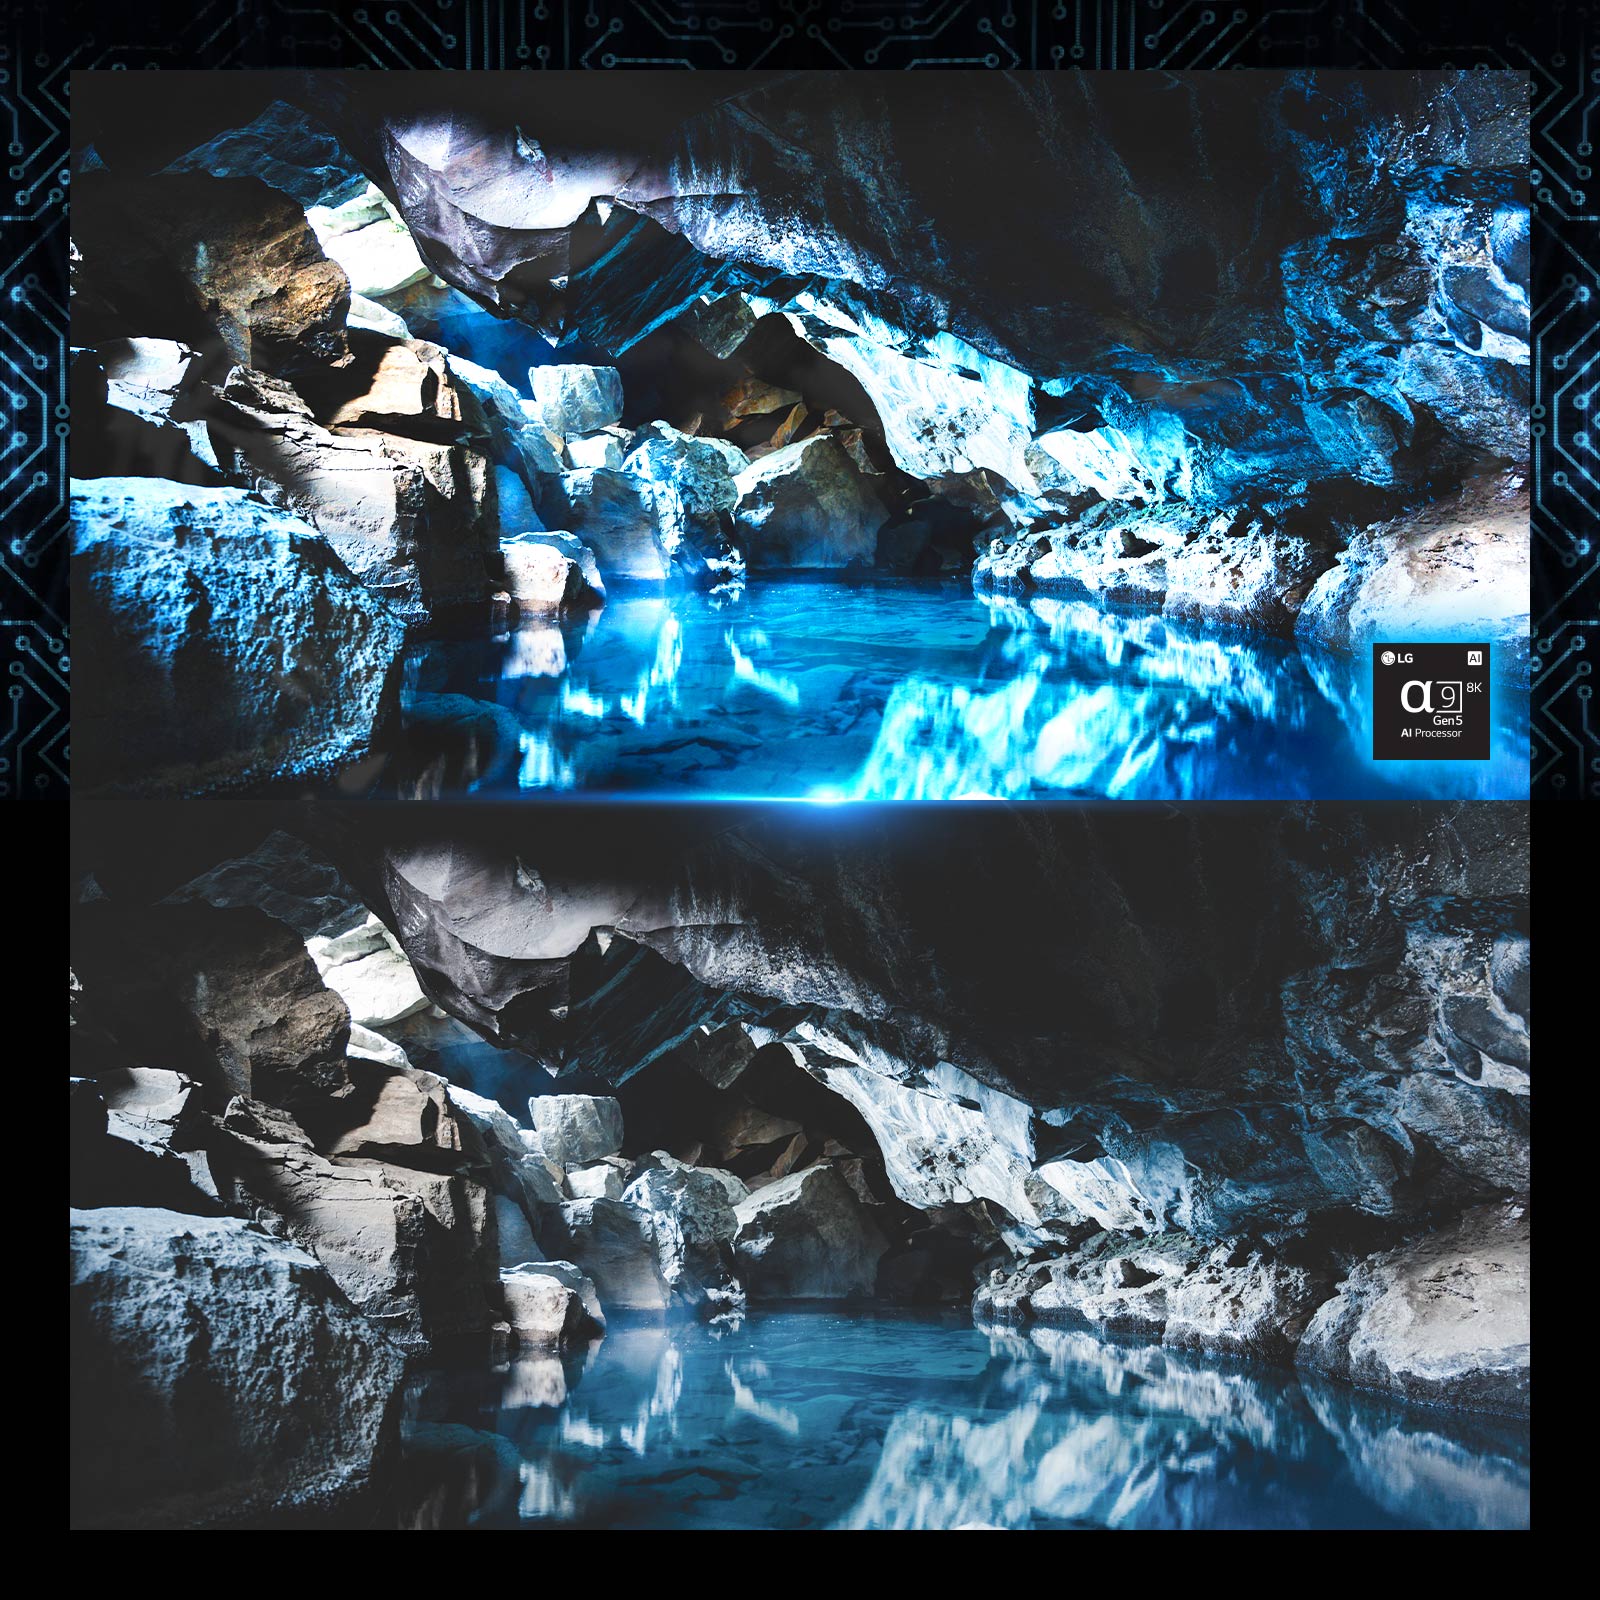 Hình ảnh bên trong hang động màu xanh đậm và hình ảnh chip xử lý ở góc dưới bên phải. Hình ảnh tương tự của hang động tối màu xanh ngay bên dưới nhưng là phiên bản nhợt nhạt hơn. 